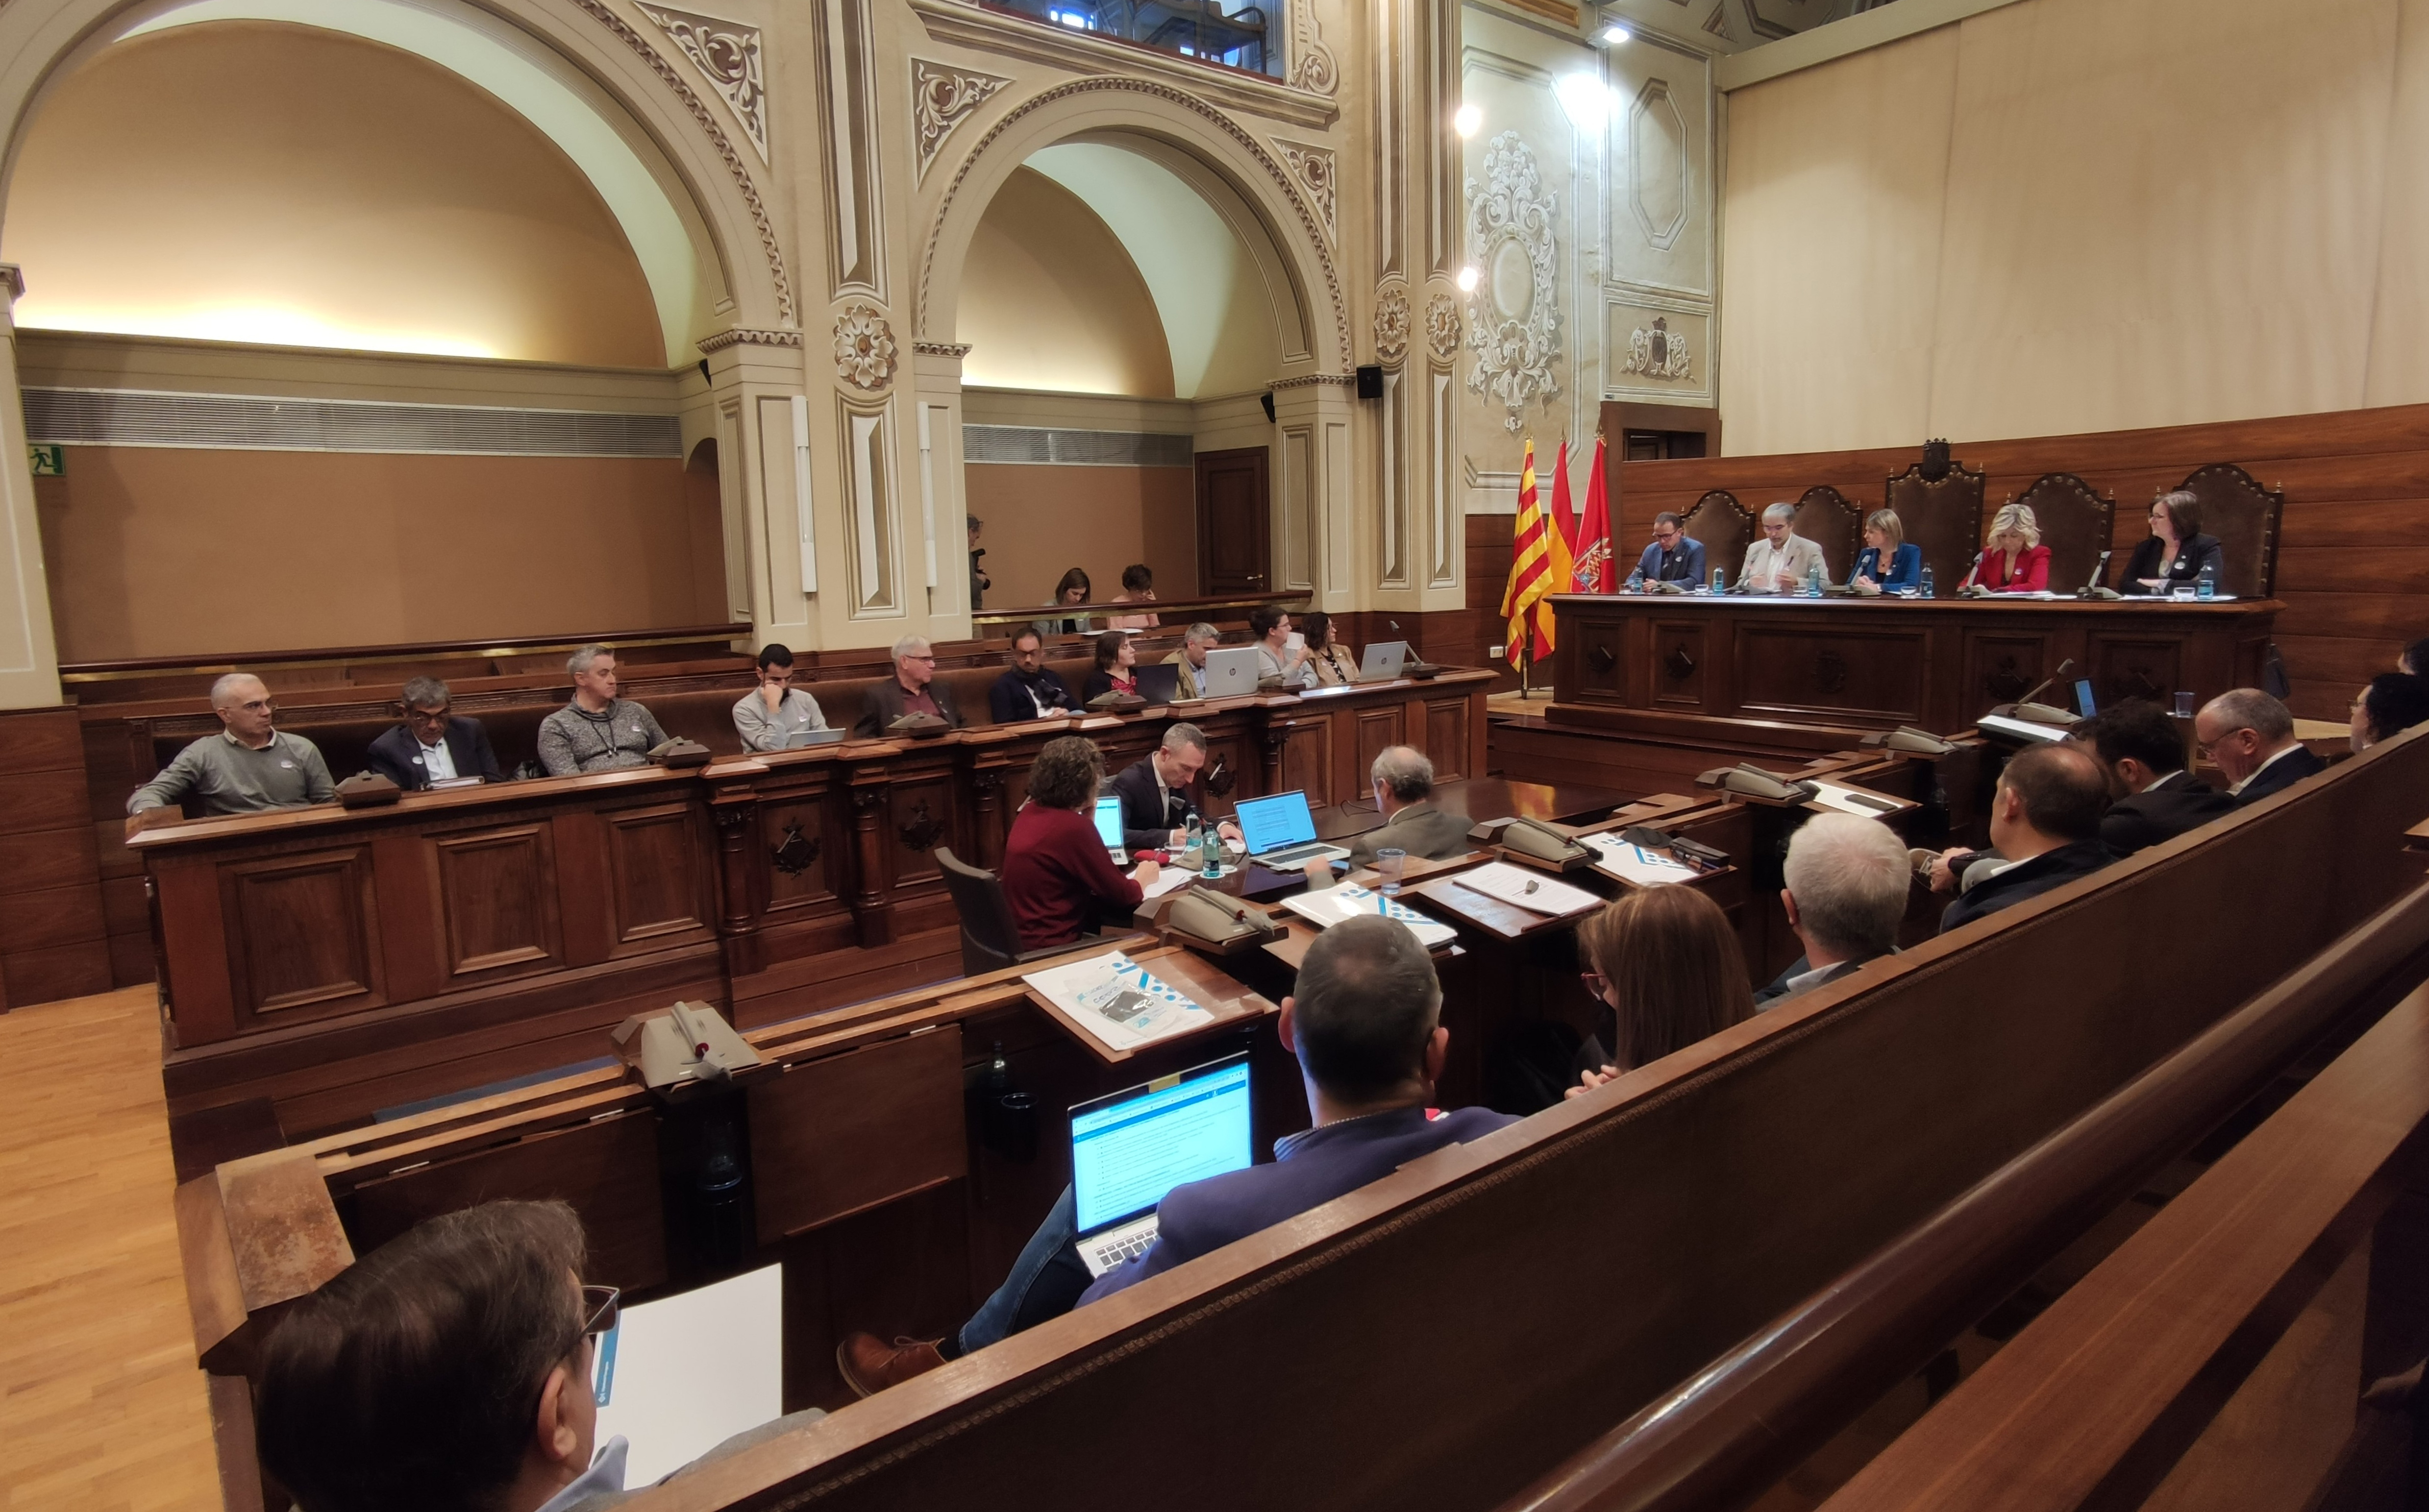 La Diputació de Tarragona aprova els pressupostos per al 2023, xifrats en 189 milions